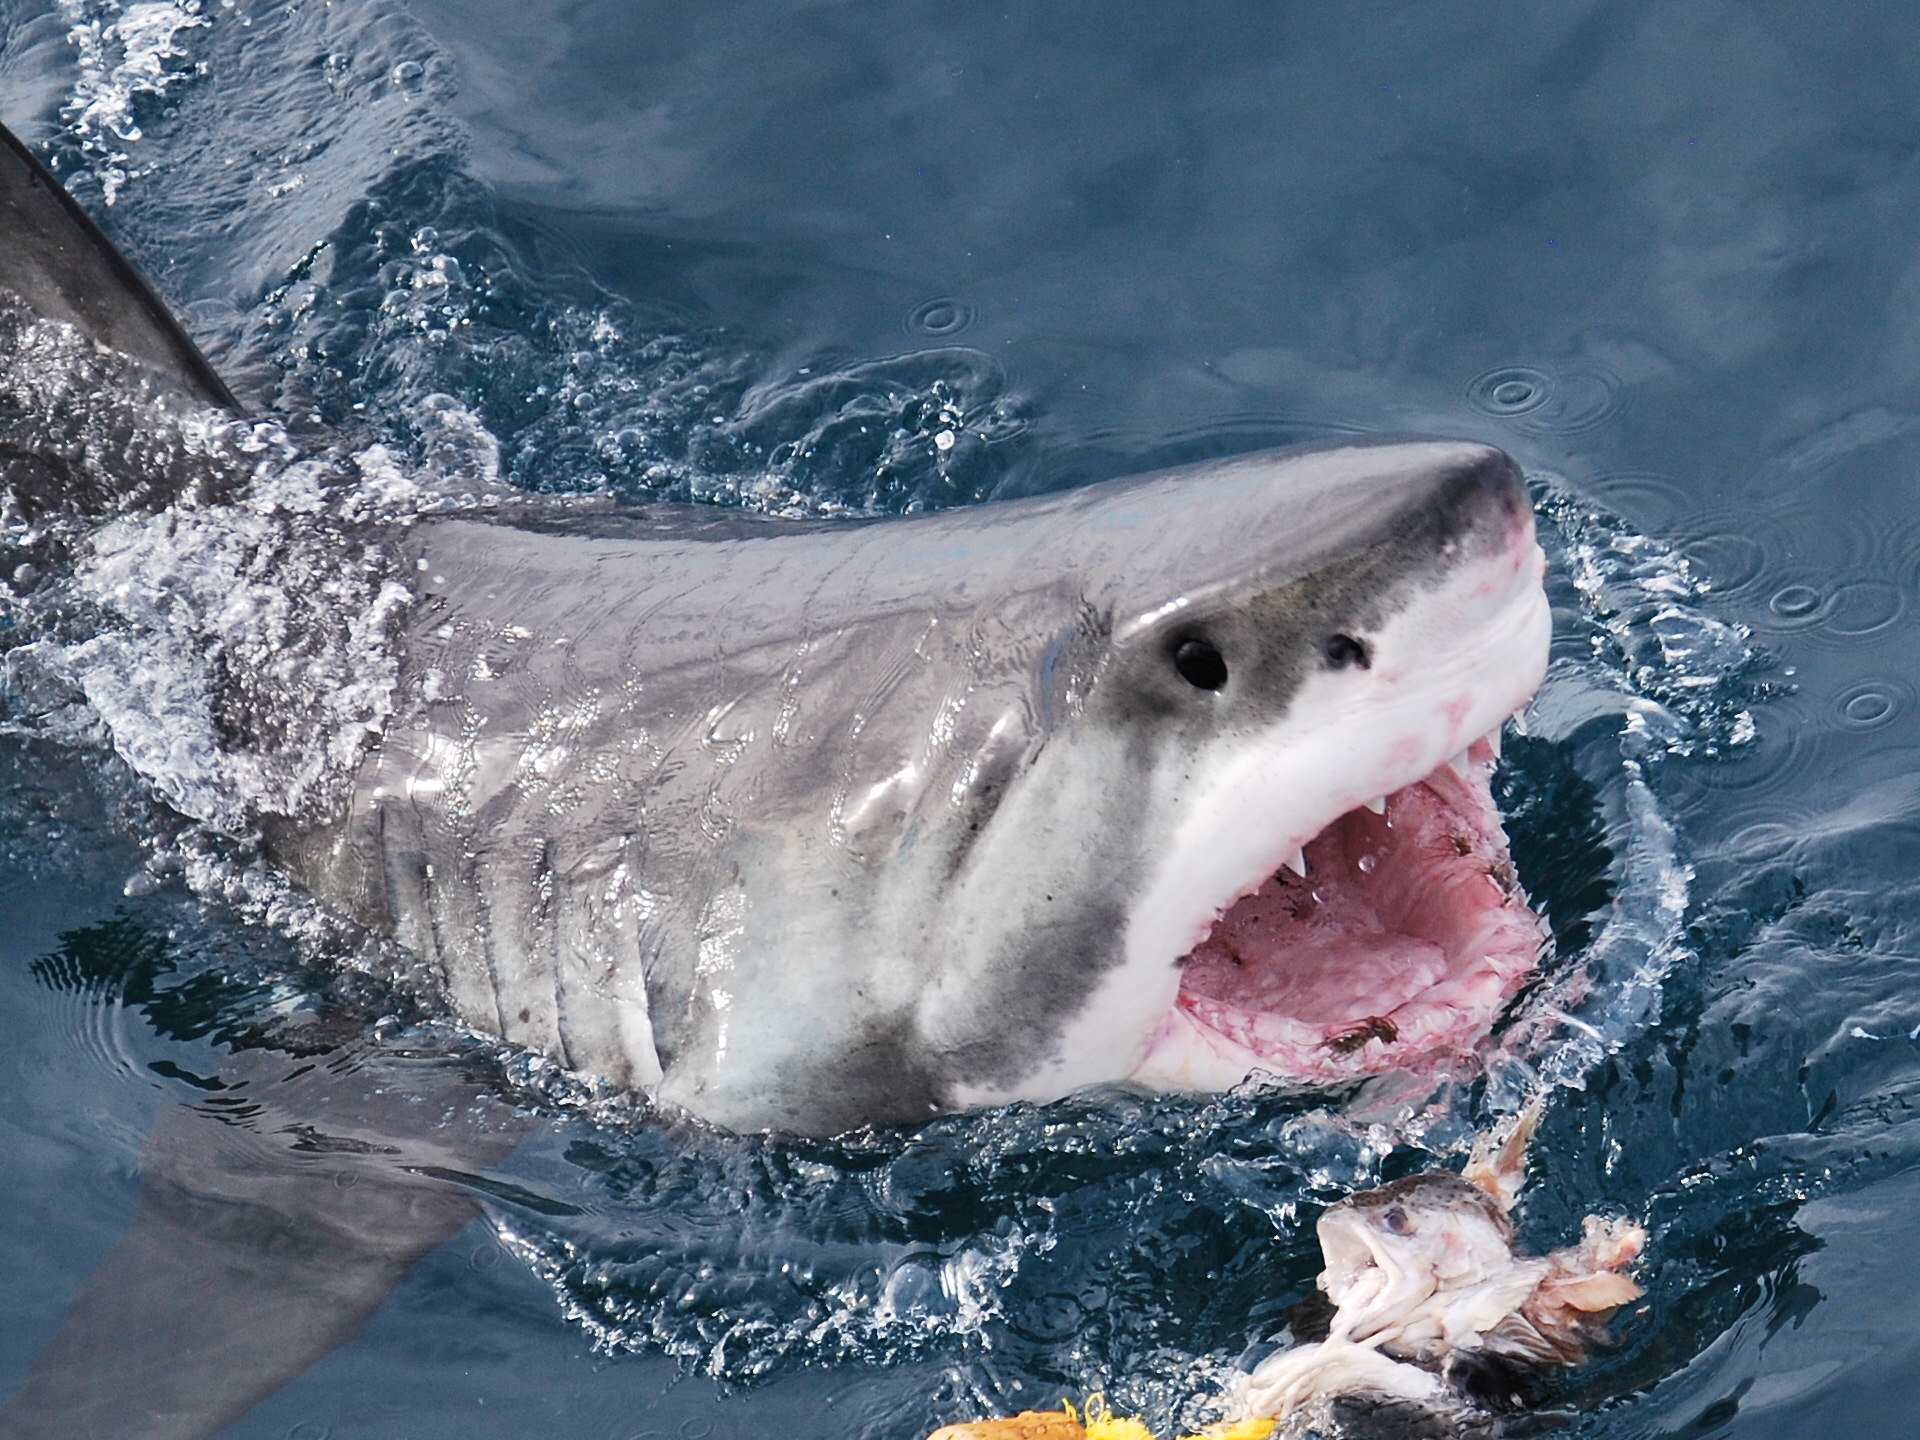 بالفيديو|| عالم أحياء يحاول إبعاد أسماك القرش الأبيض عن حوت أحدب ضخم وهي تتغذى عليه